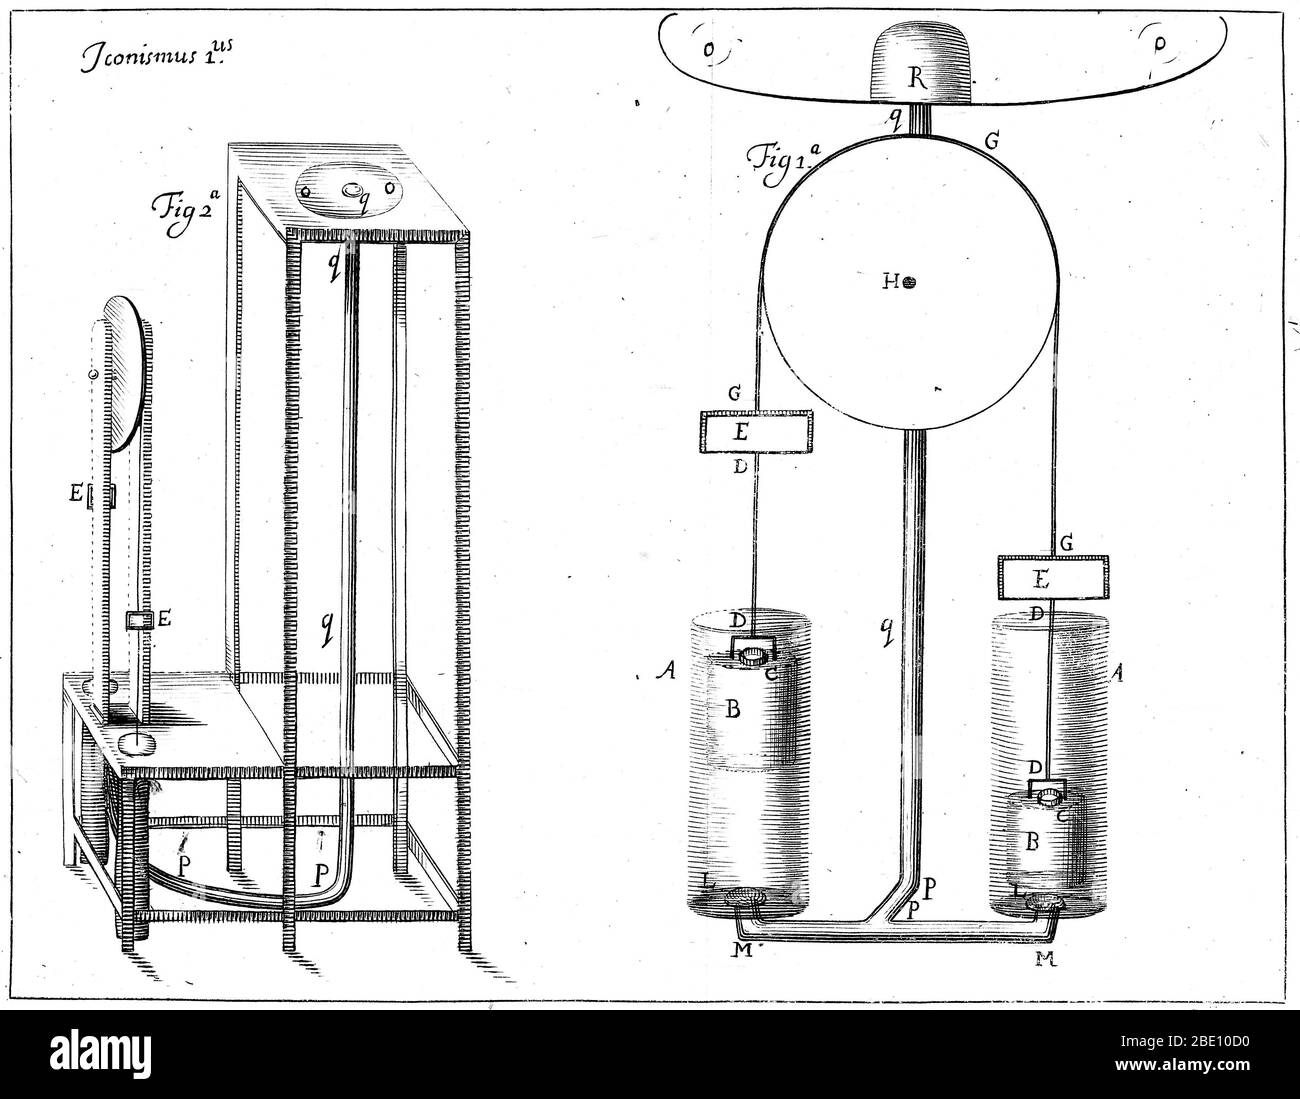 Robert Boyle's dritte Luftpumpe, doppelbarreled, 1682. Robert Boyle (1627-1691) war ein Naturphilosoph, Chemiker, Physiker und Erfinder des 17. Jahrhunderts. Obwohl seine Forschung eindeutig ihre Wurzeln in der alchemistischen Tradition hat, gilt Boyle heute weitgehend als der erste moderne Chemiker und damit einer der Begründer der modernen Chemie und einer der Pioniere der modernen experimentellen wissenschaftlichen Methode. Er ist am besten bekannt für Boyle's Gesetz, das beschreibt die umgekehrt proportional Beziehung zwischen dem absoluten Druck und Volumen eines Gases, wenn die Temperatur konstant gehalten wird innerhalb eines geschlossenen s Stockfoto